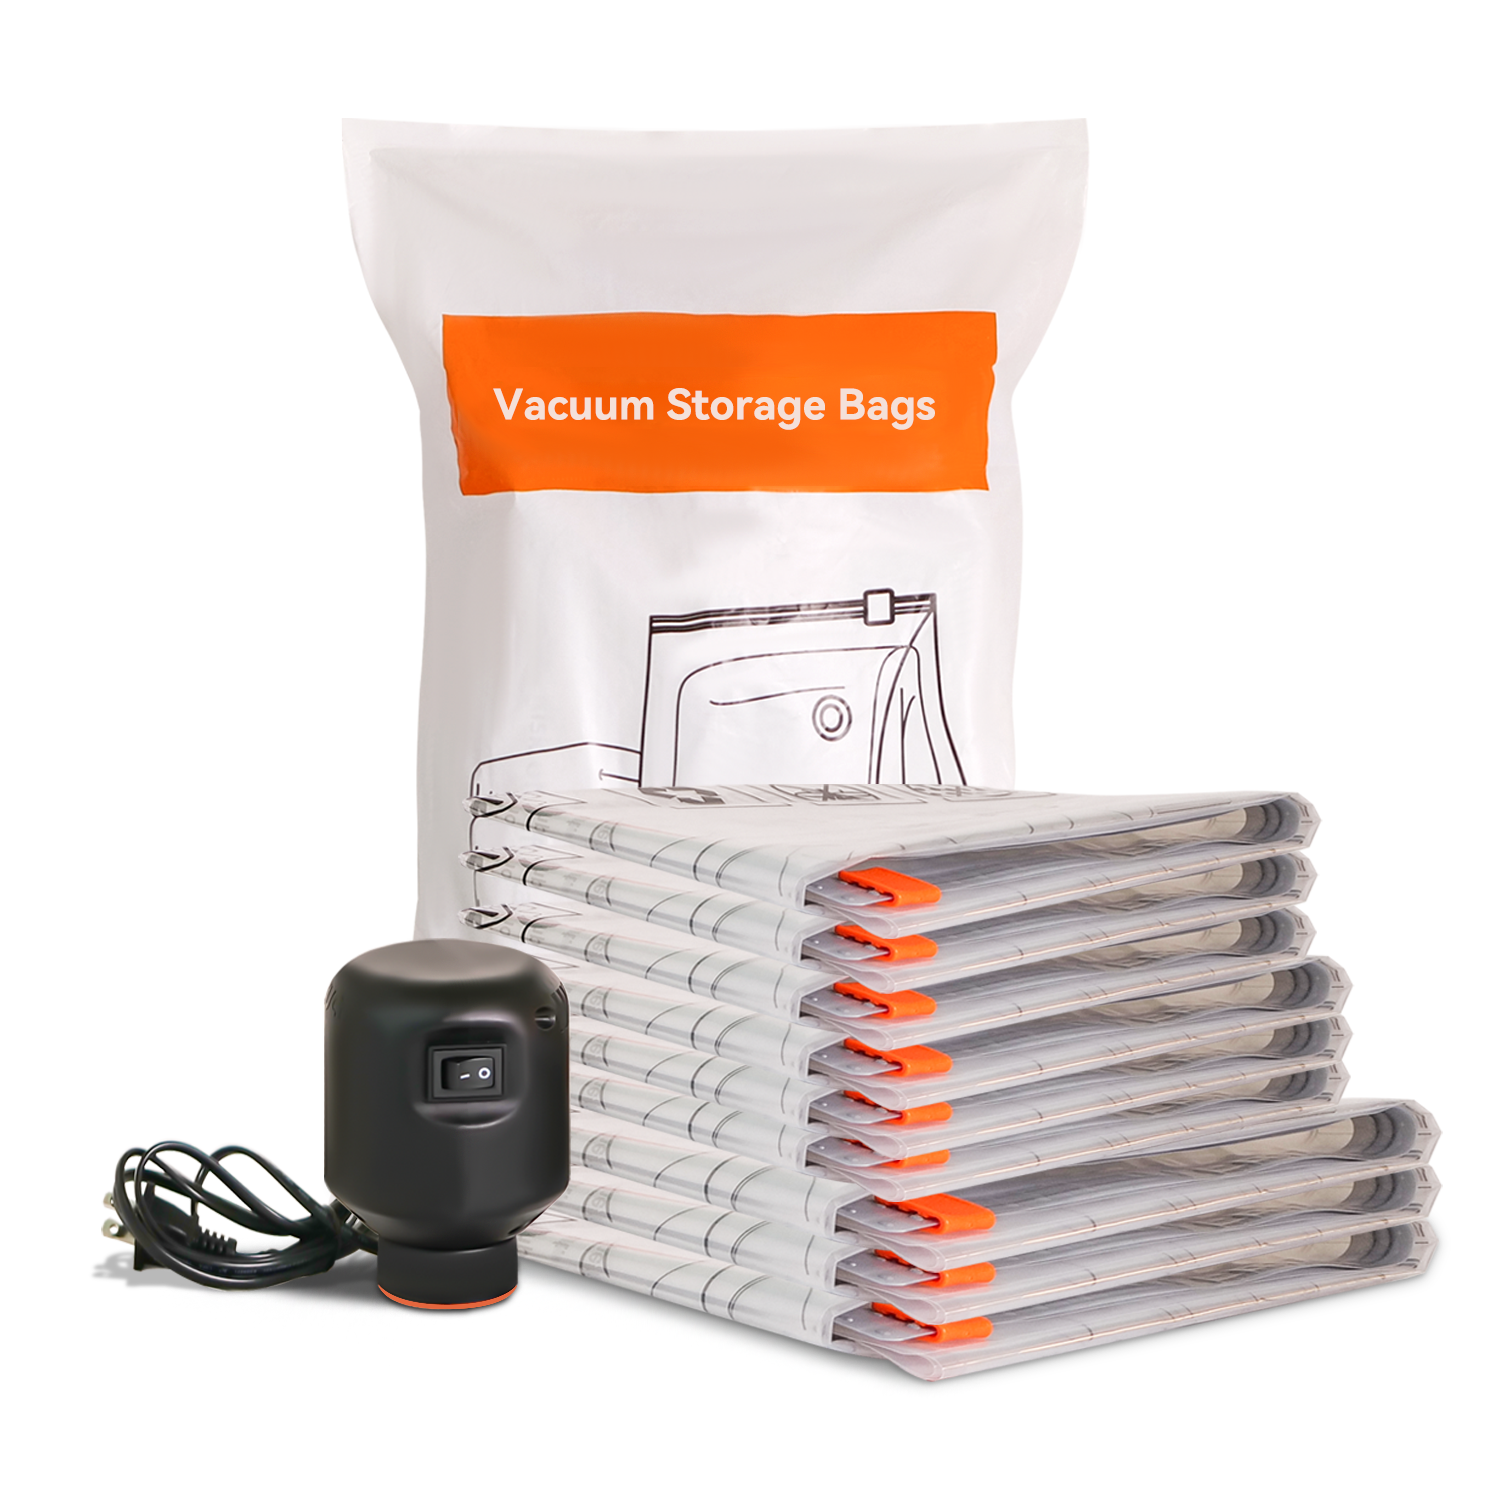 Vacuum Storage Bags-Wevac